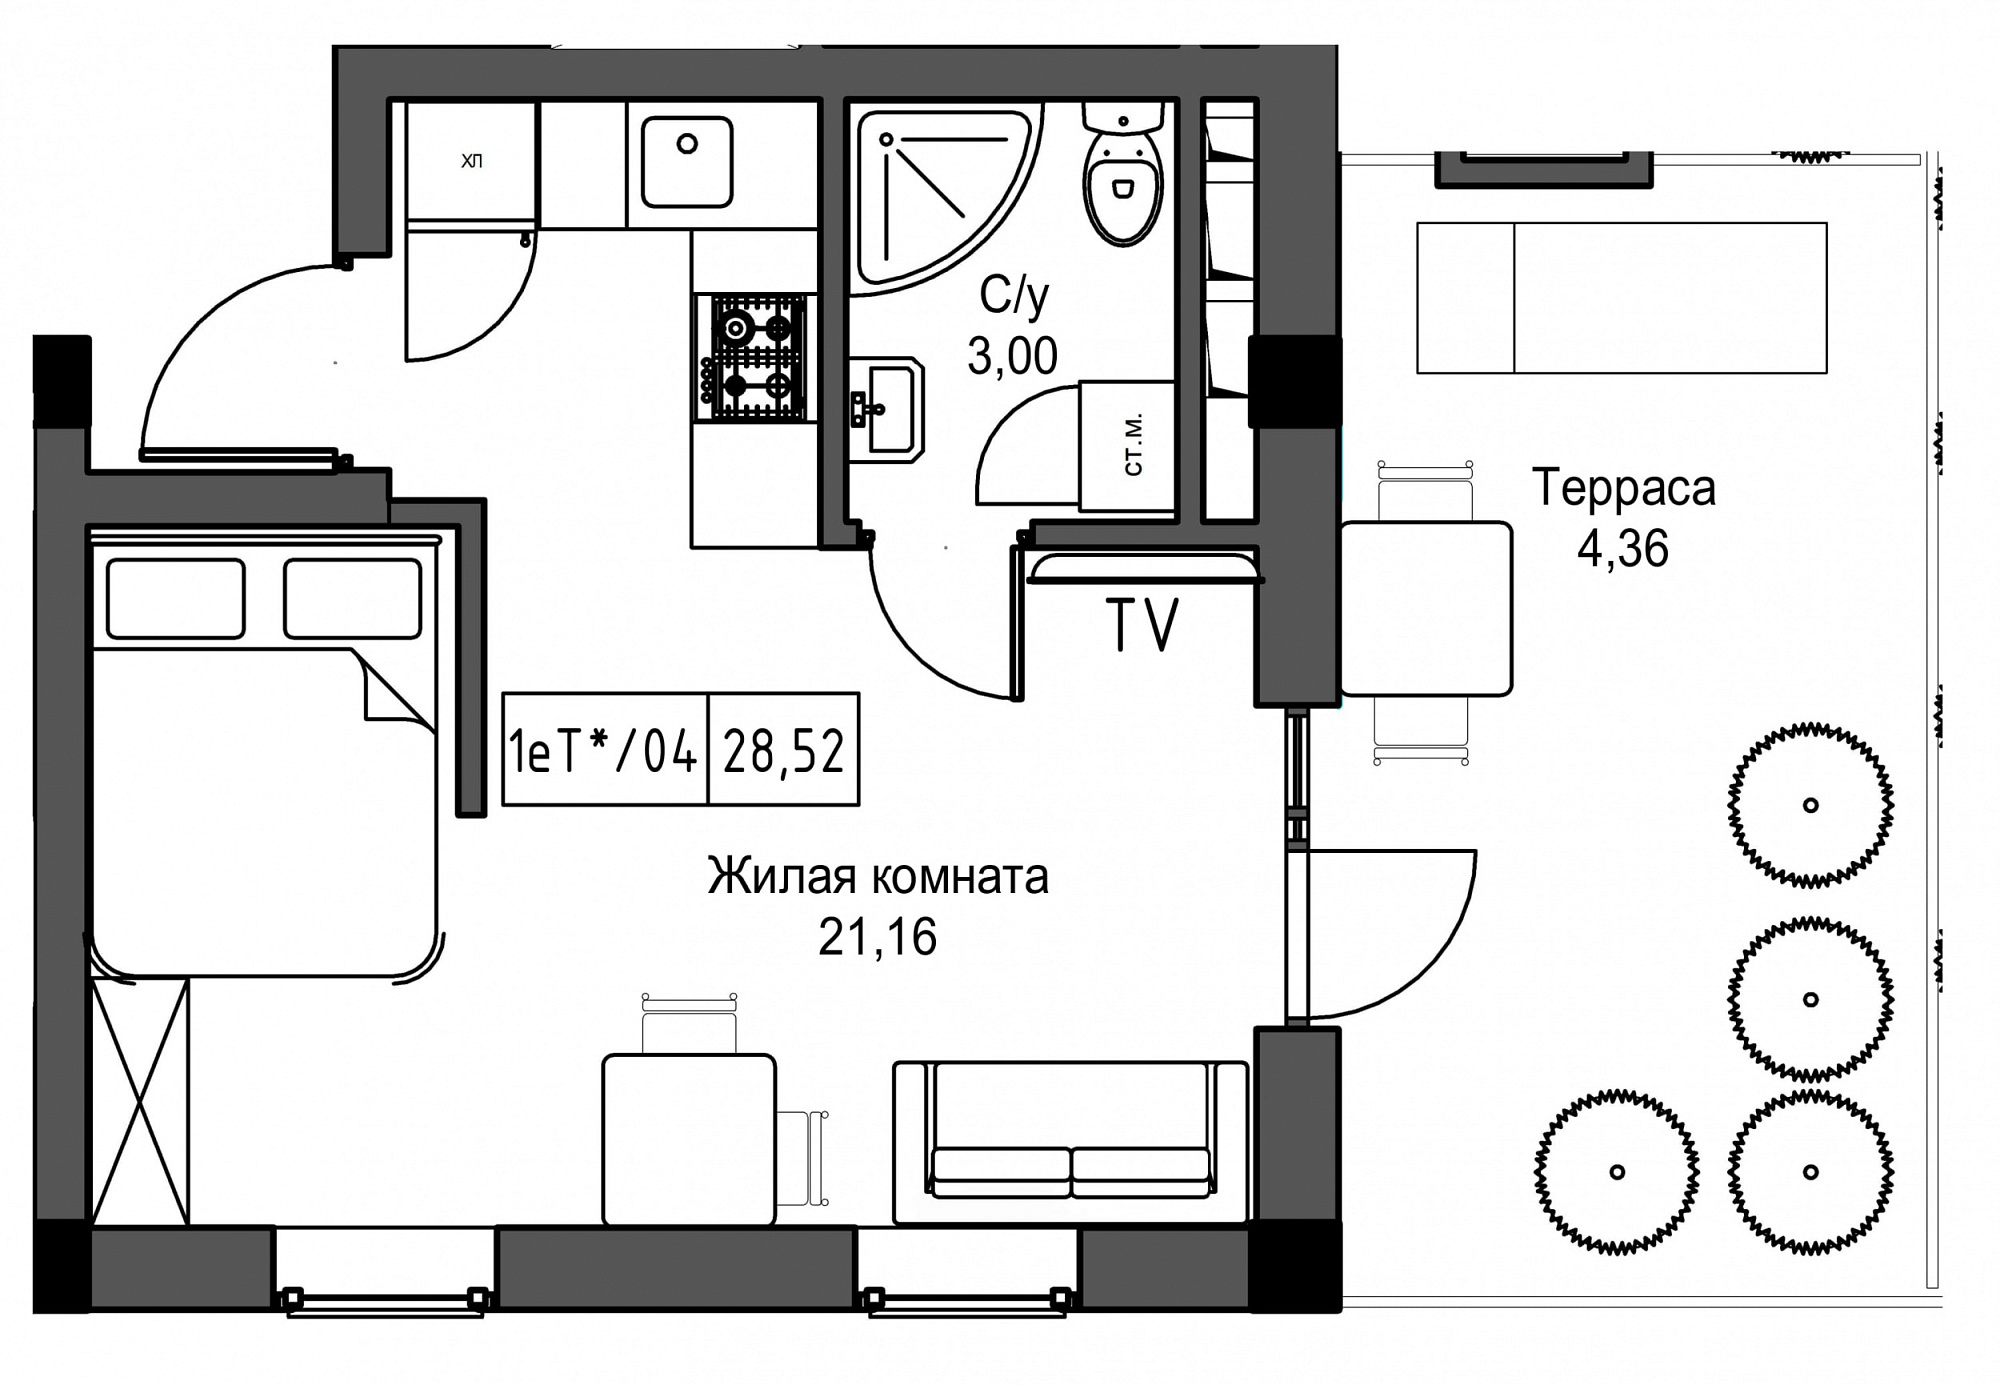 Планировка 1-к квартира площей 28.52м2, UM-002-05/0045.